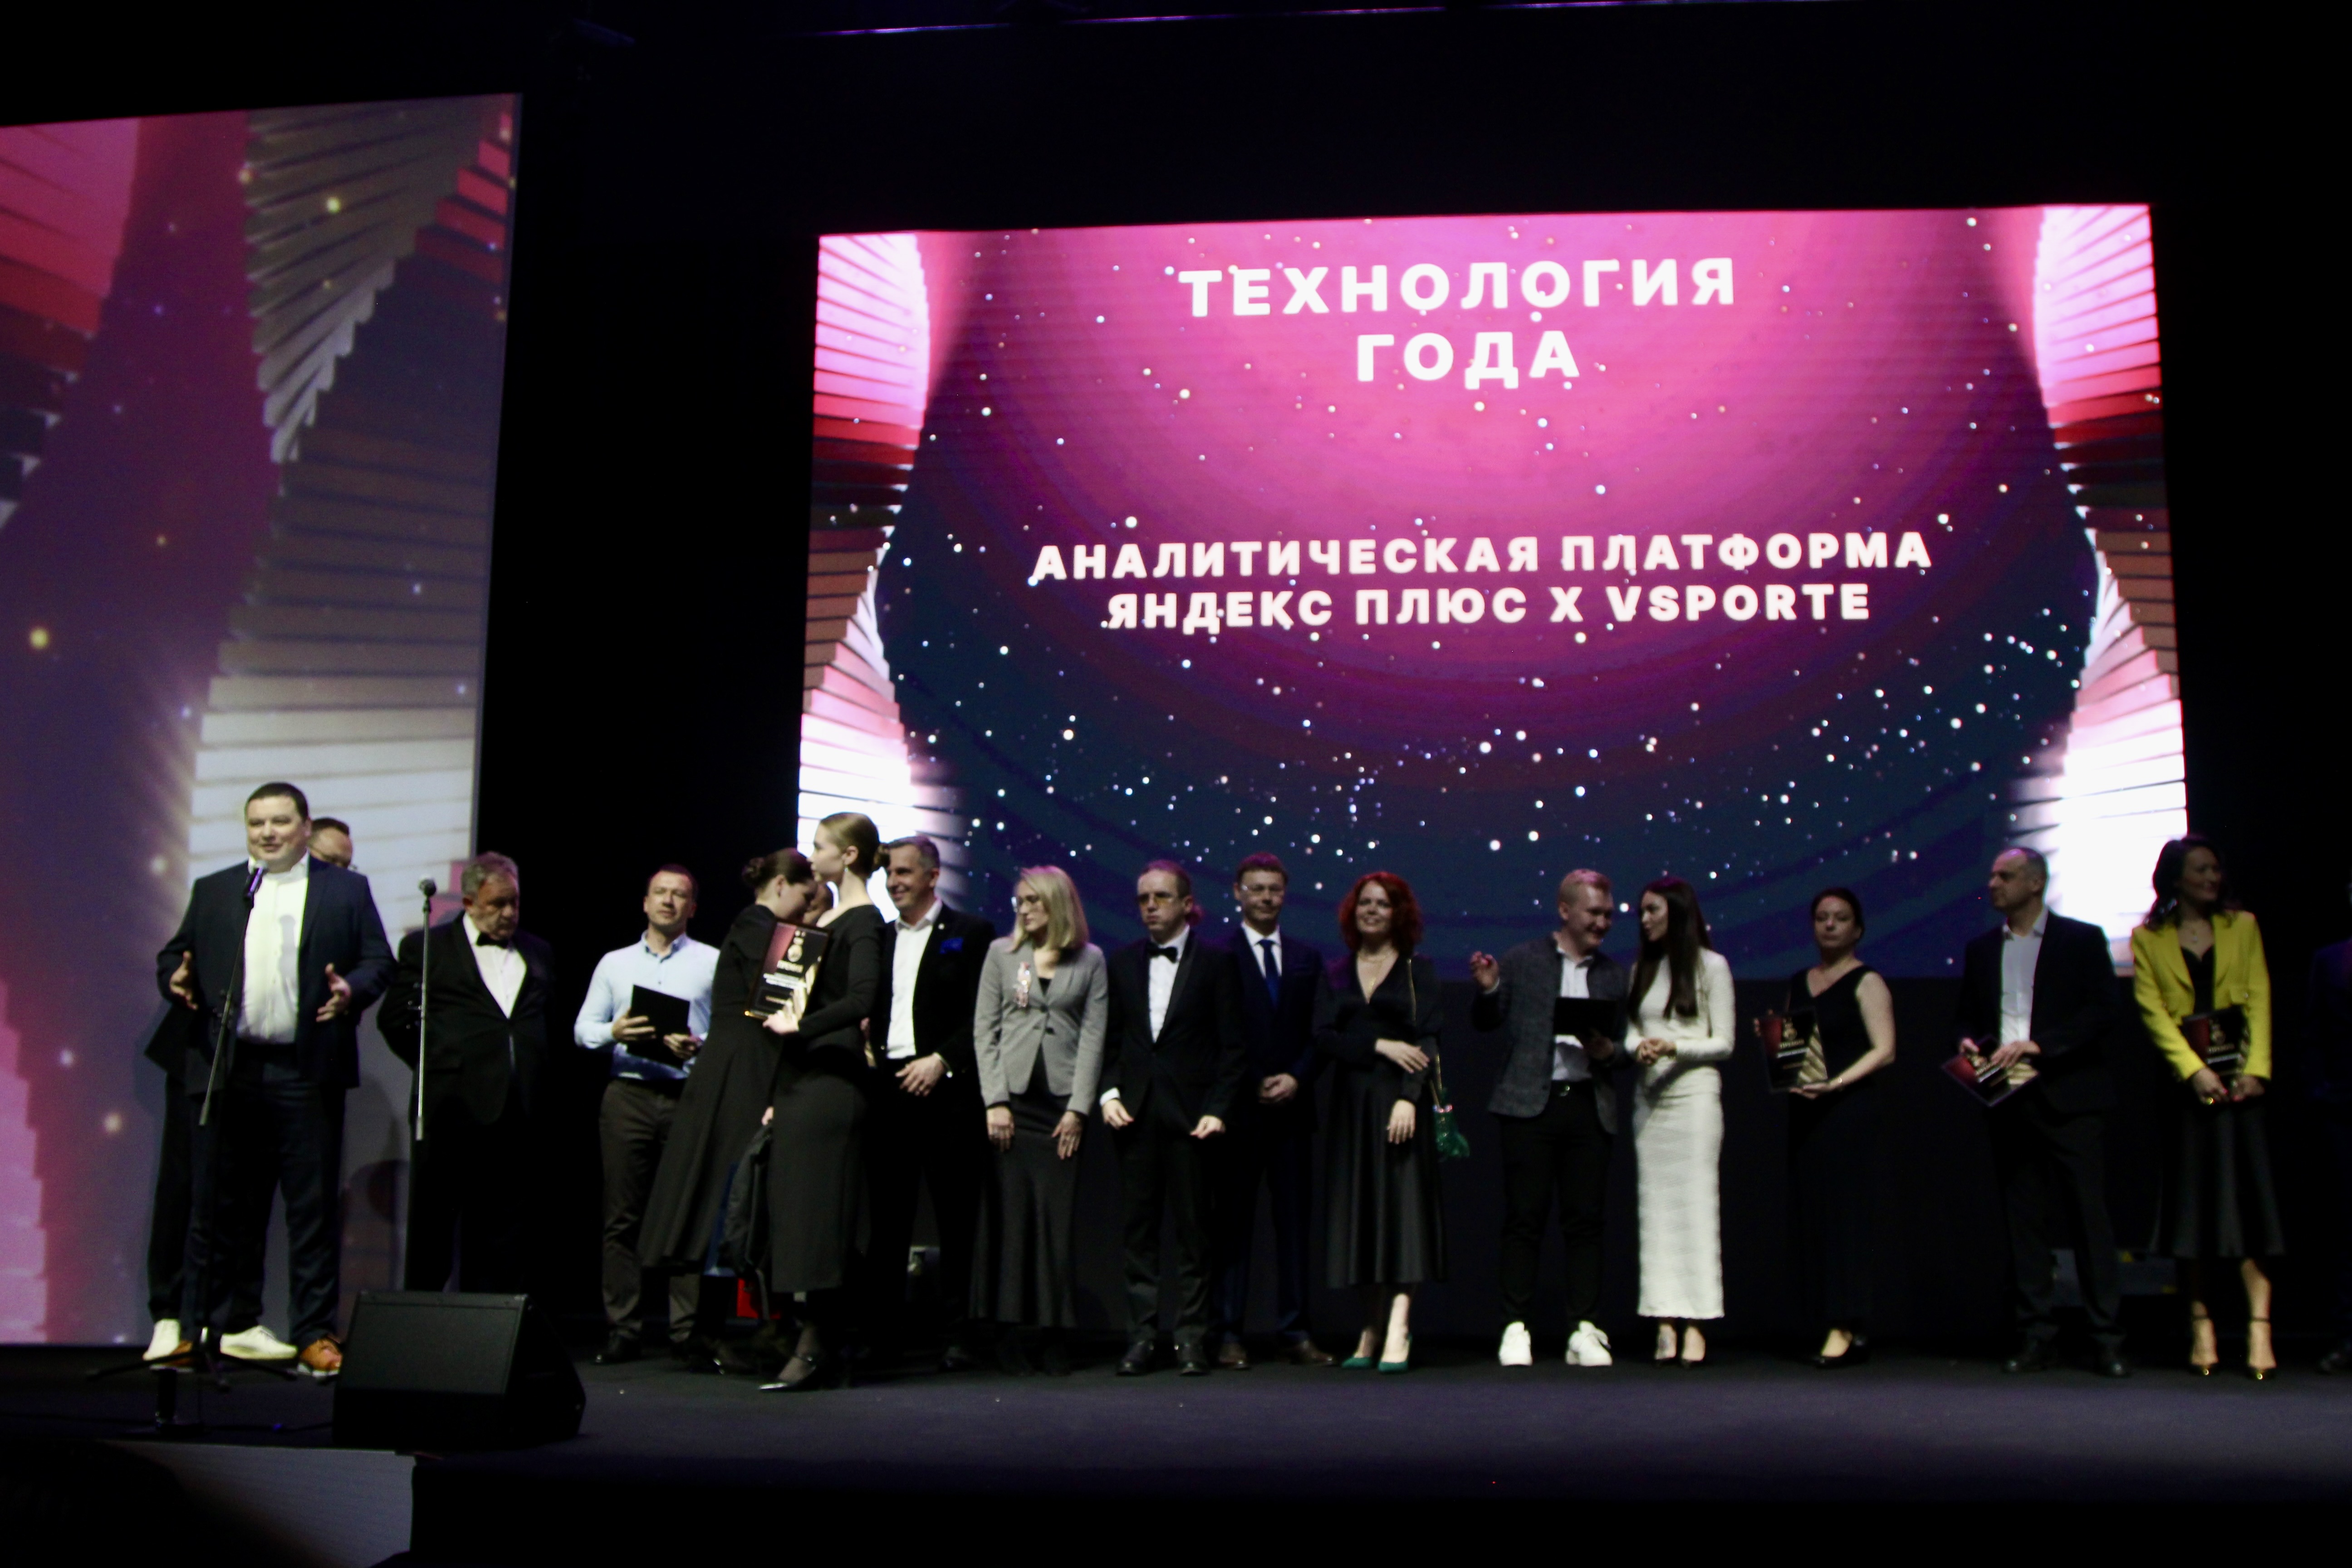 Номинацию «Технология года» на Премии СБК выиграла аналитическая платформа «Яндекс Плюс х VSporte»